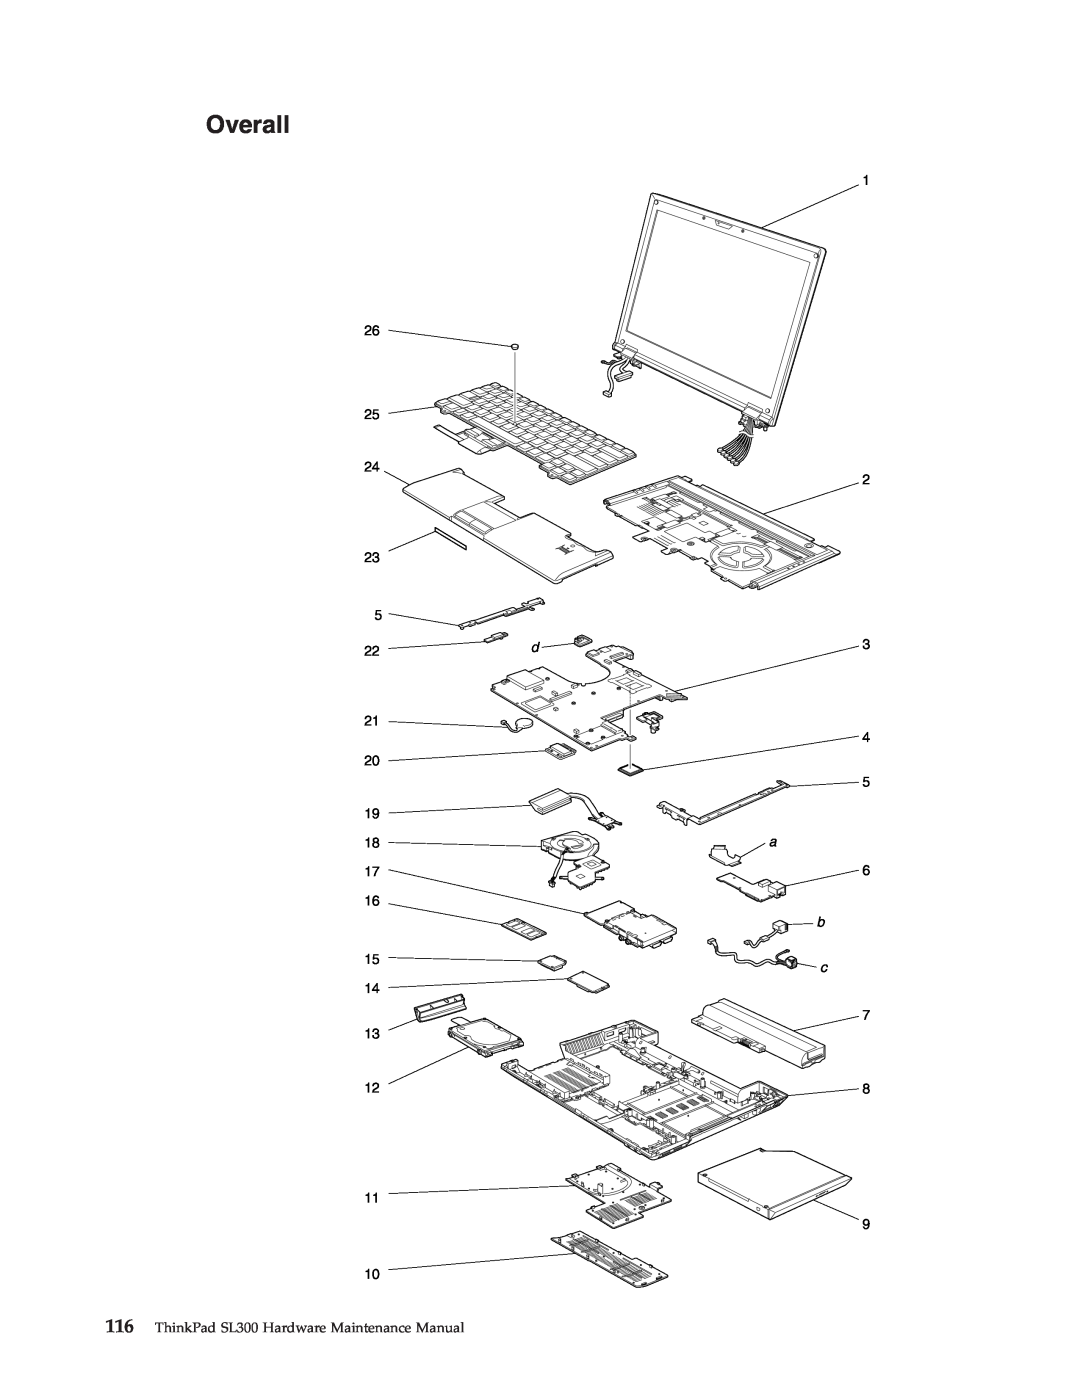 Lenovo manual Overall, ThinkPad SL300 Hardware Maintenance Manual 